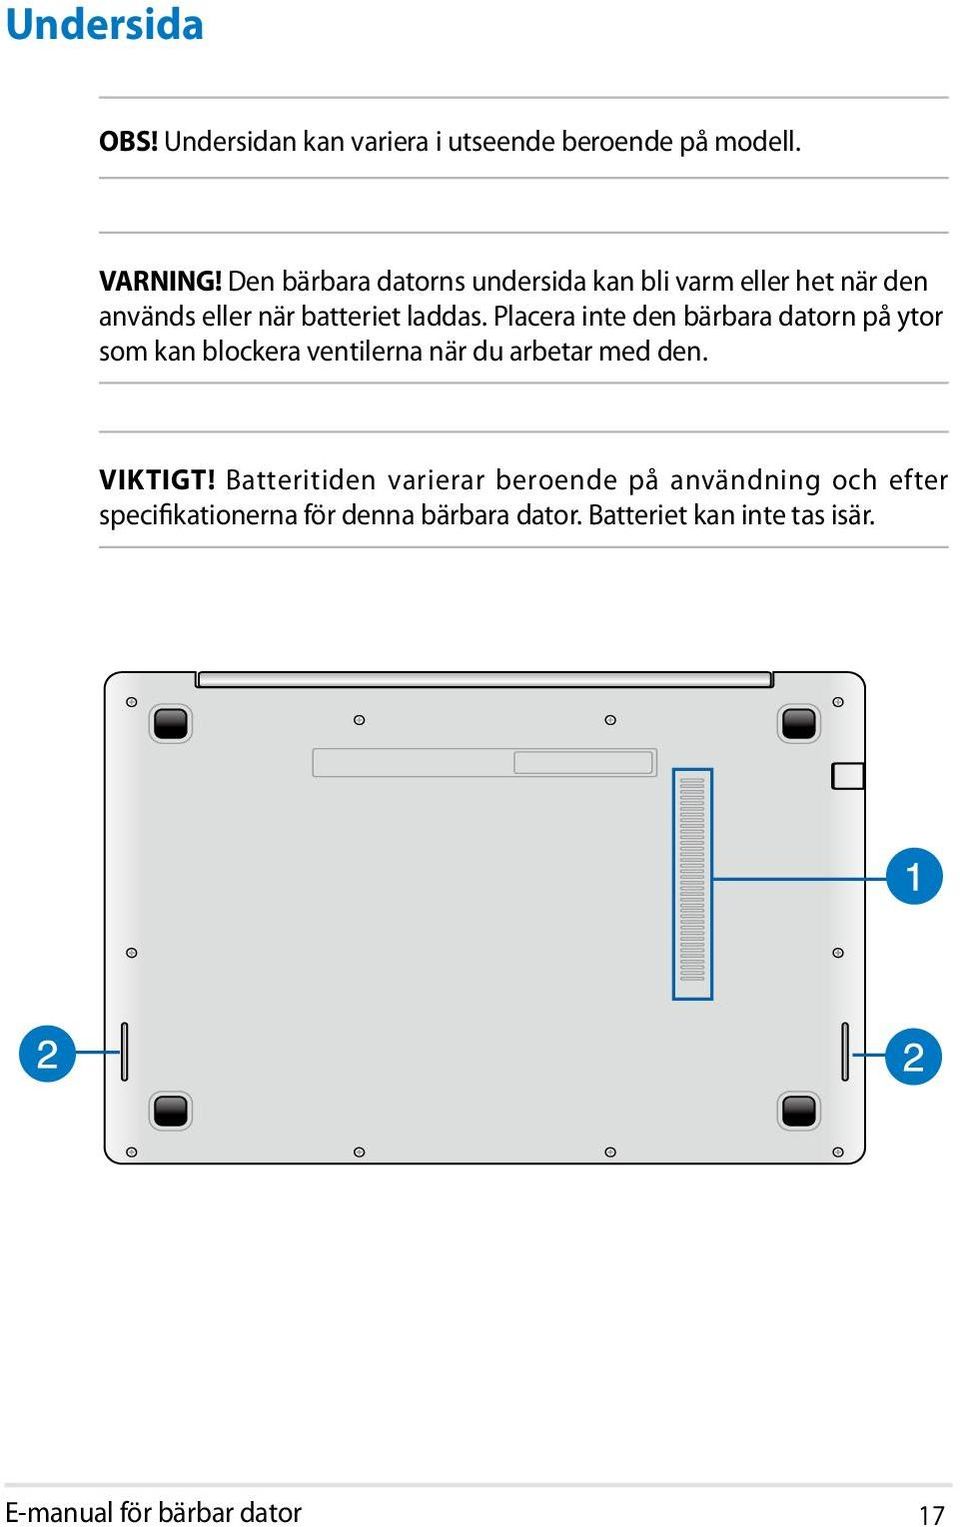 Placera inte den bärbara datorn på ytor som kan blockera ventilerna när du arbetar med den. VIKTIGT!